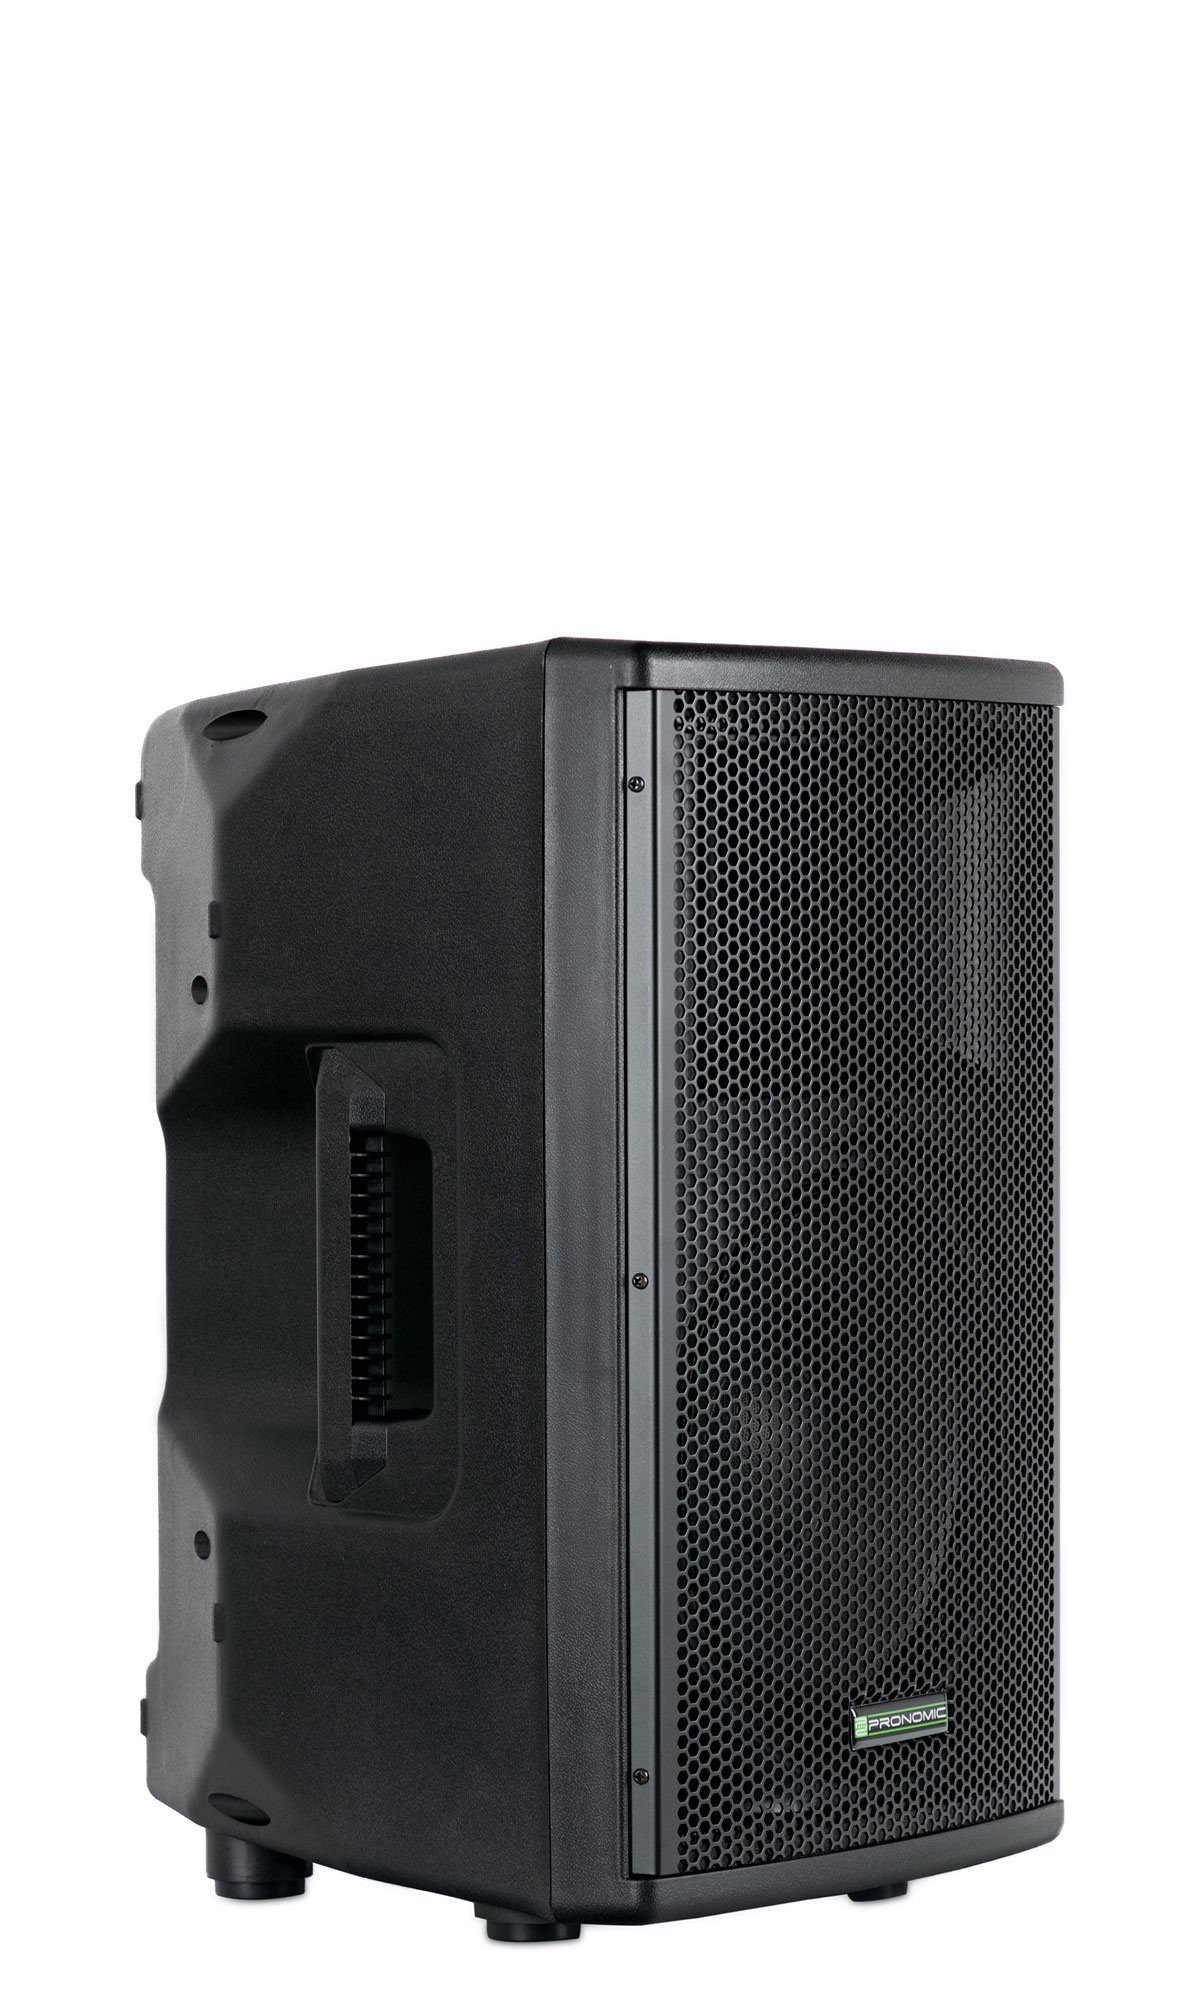 Pronomic E-210 MA - Aktive 2-Wege Box - Leistung: 100 Watt (RMS) - 10"  Woofer + 1,0" Kompressions-Treiber - Bluetooth-Empfänger und MP3-Player mit  USB/SD - Monitorschräge Lautsprecher (100 W, Strapazierfähiges  Kunststoff-Gehäuse mit Monitorschräge)